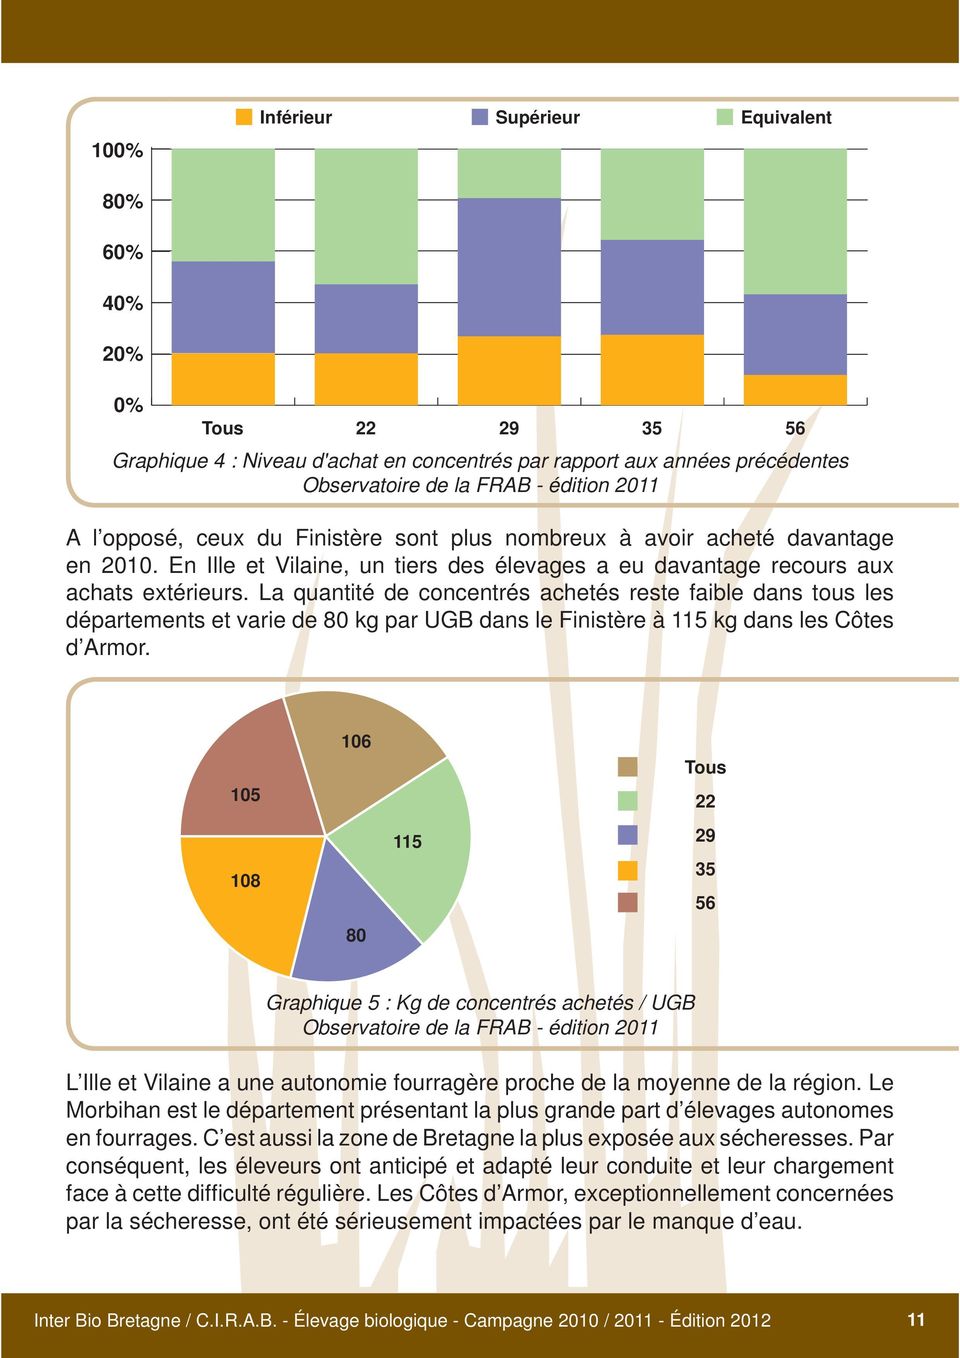 La quantité de concentrés achetés reste faible dans tous les départements et varie de 80 kg par UGB dans le Finistère à 115 kg dans les Côtes d Armor.